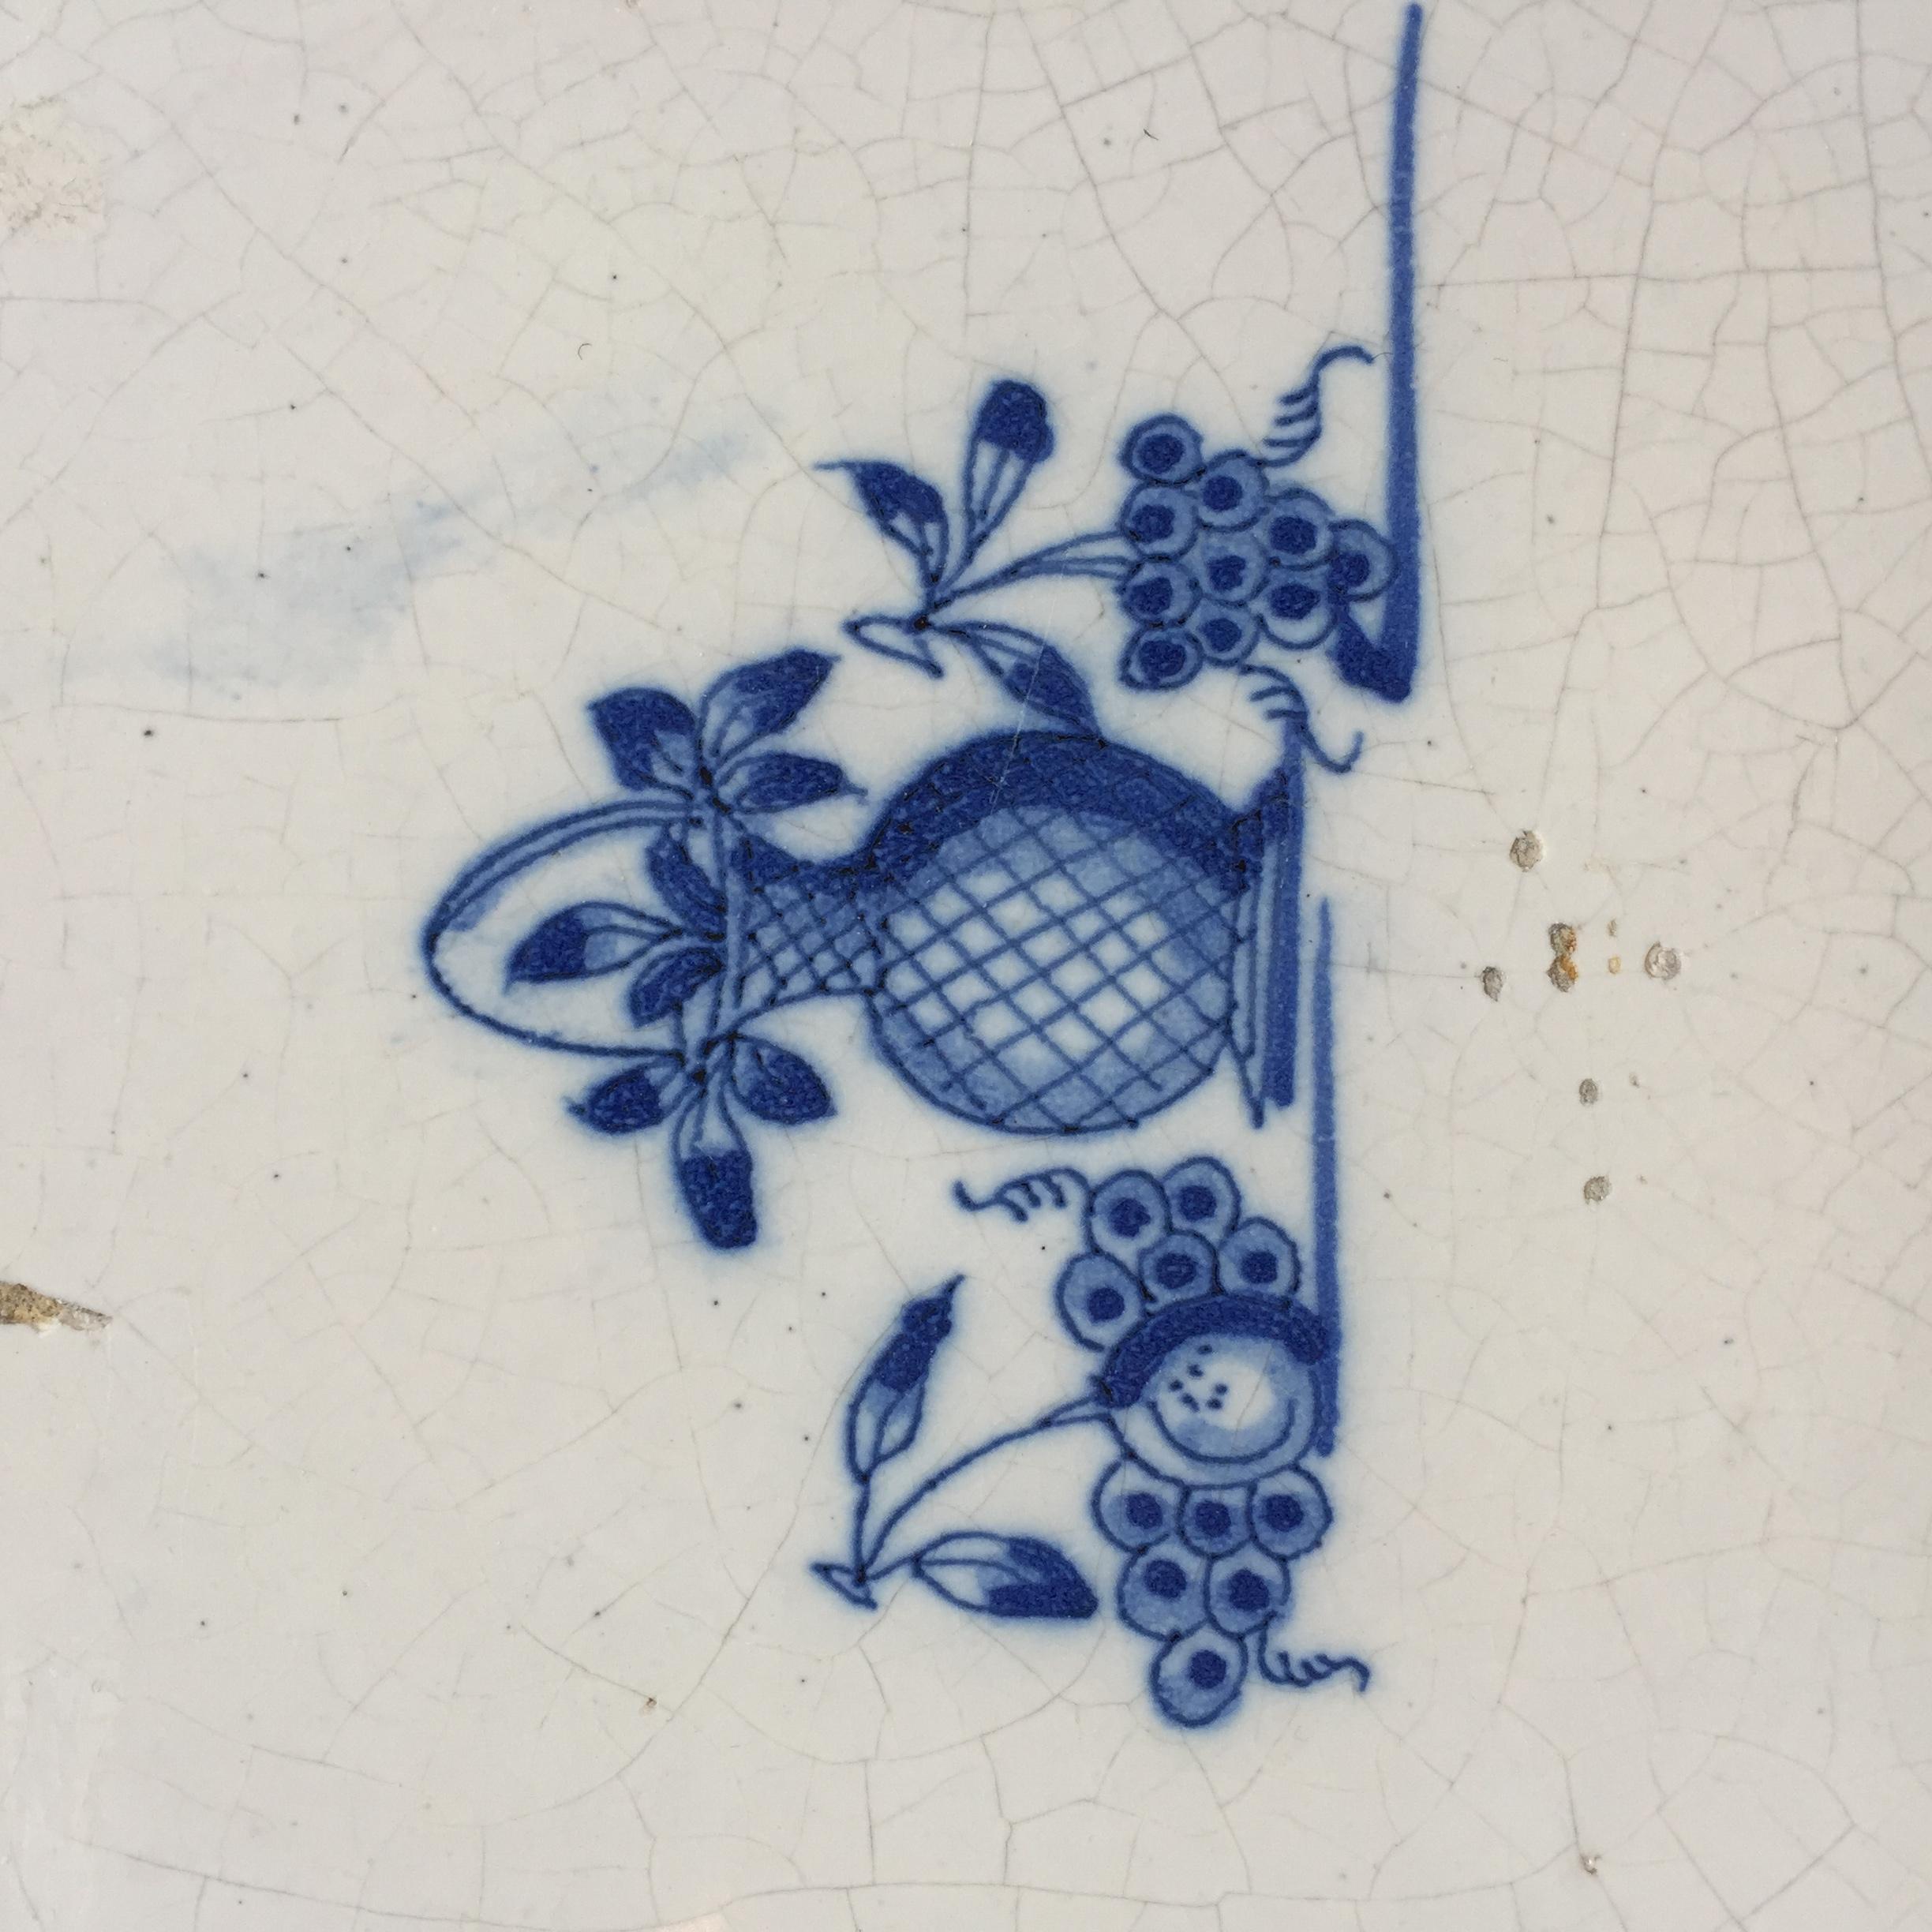 Die Niederlande
CIRCA 1700

Eine schöne blau-weiße holländische Fliese mit dem Stillleben einer Vase mit Blättern, Weintrauben und einem Apfel an den Seiten.

Die Szene ist ohne Eckdekoration gemalt, um den Fokus ganz auf das Stillleben zu